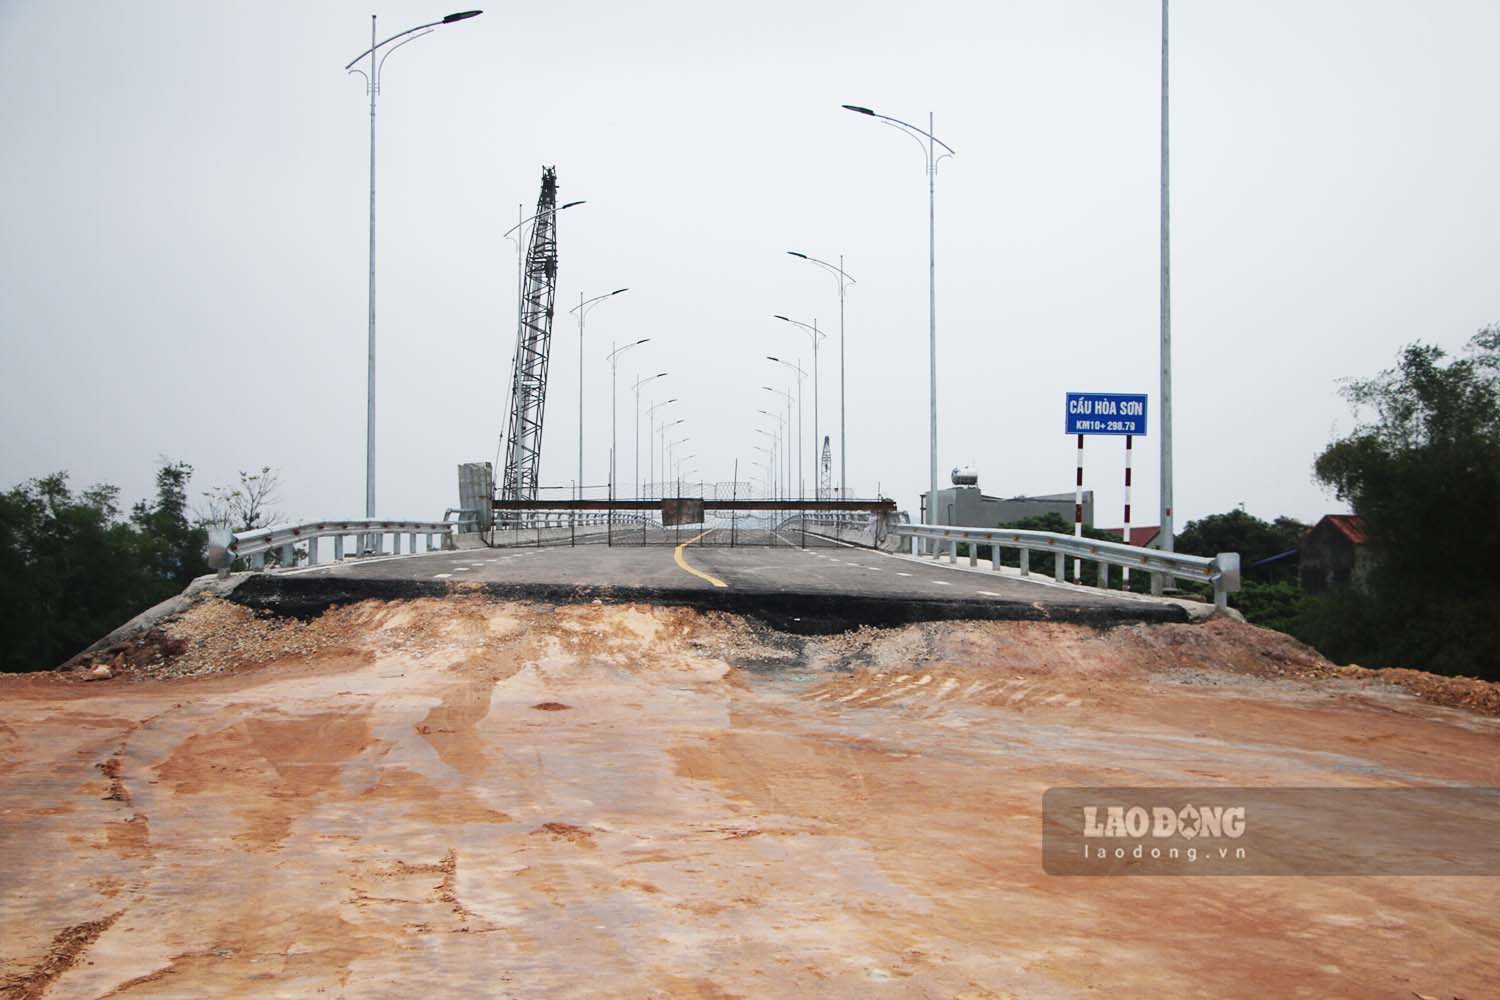 Nguyên nhân do phần đường dẫn lên cầu bên phía phường Đông Cao (TP Phổ Yên) vẫn chưa hoàn thiện. Đây cũng là điểm đầu của dự án tuyến đường liên kết Thái Nguyên - Bắc Giang - Vĩnh Phúc do Ban Quản lý dự án đầu tư xây dựng các công trình giao thông (ĐTXD CTGT) tỉnh Thái Nguyên làm chủ đầu tư.